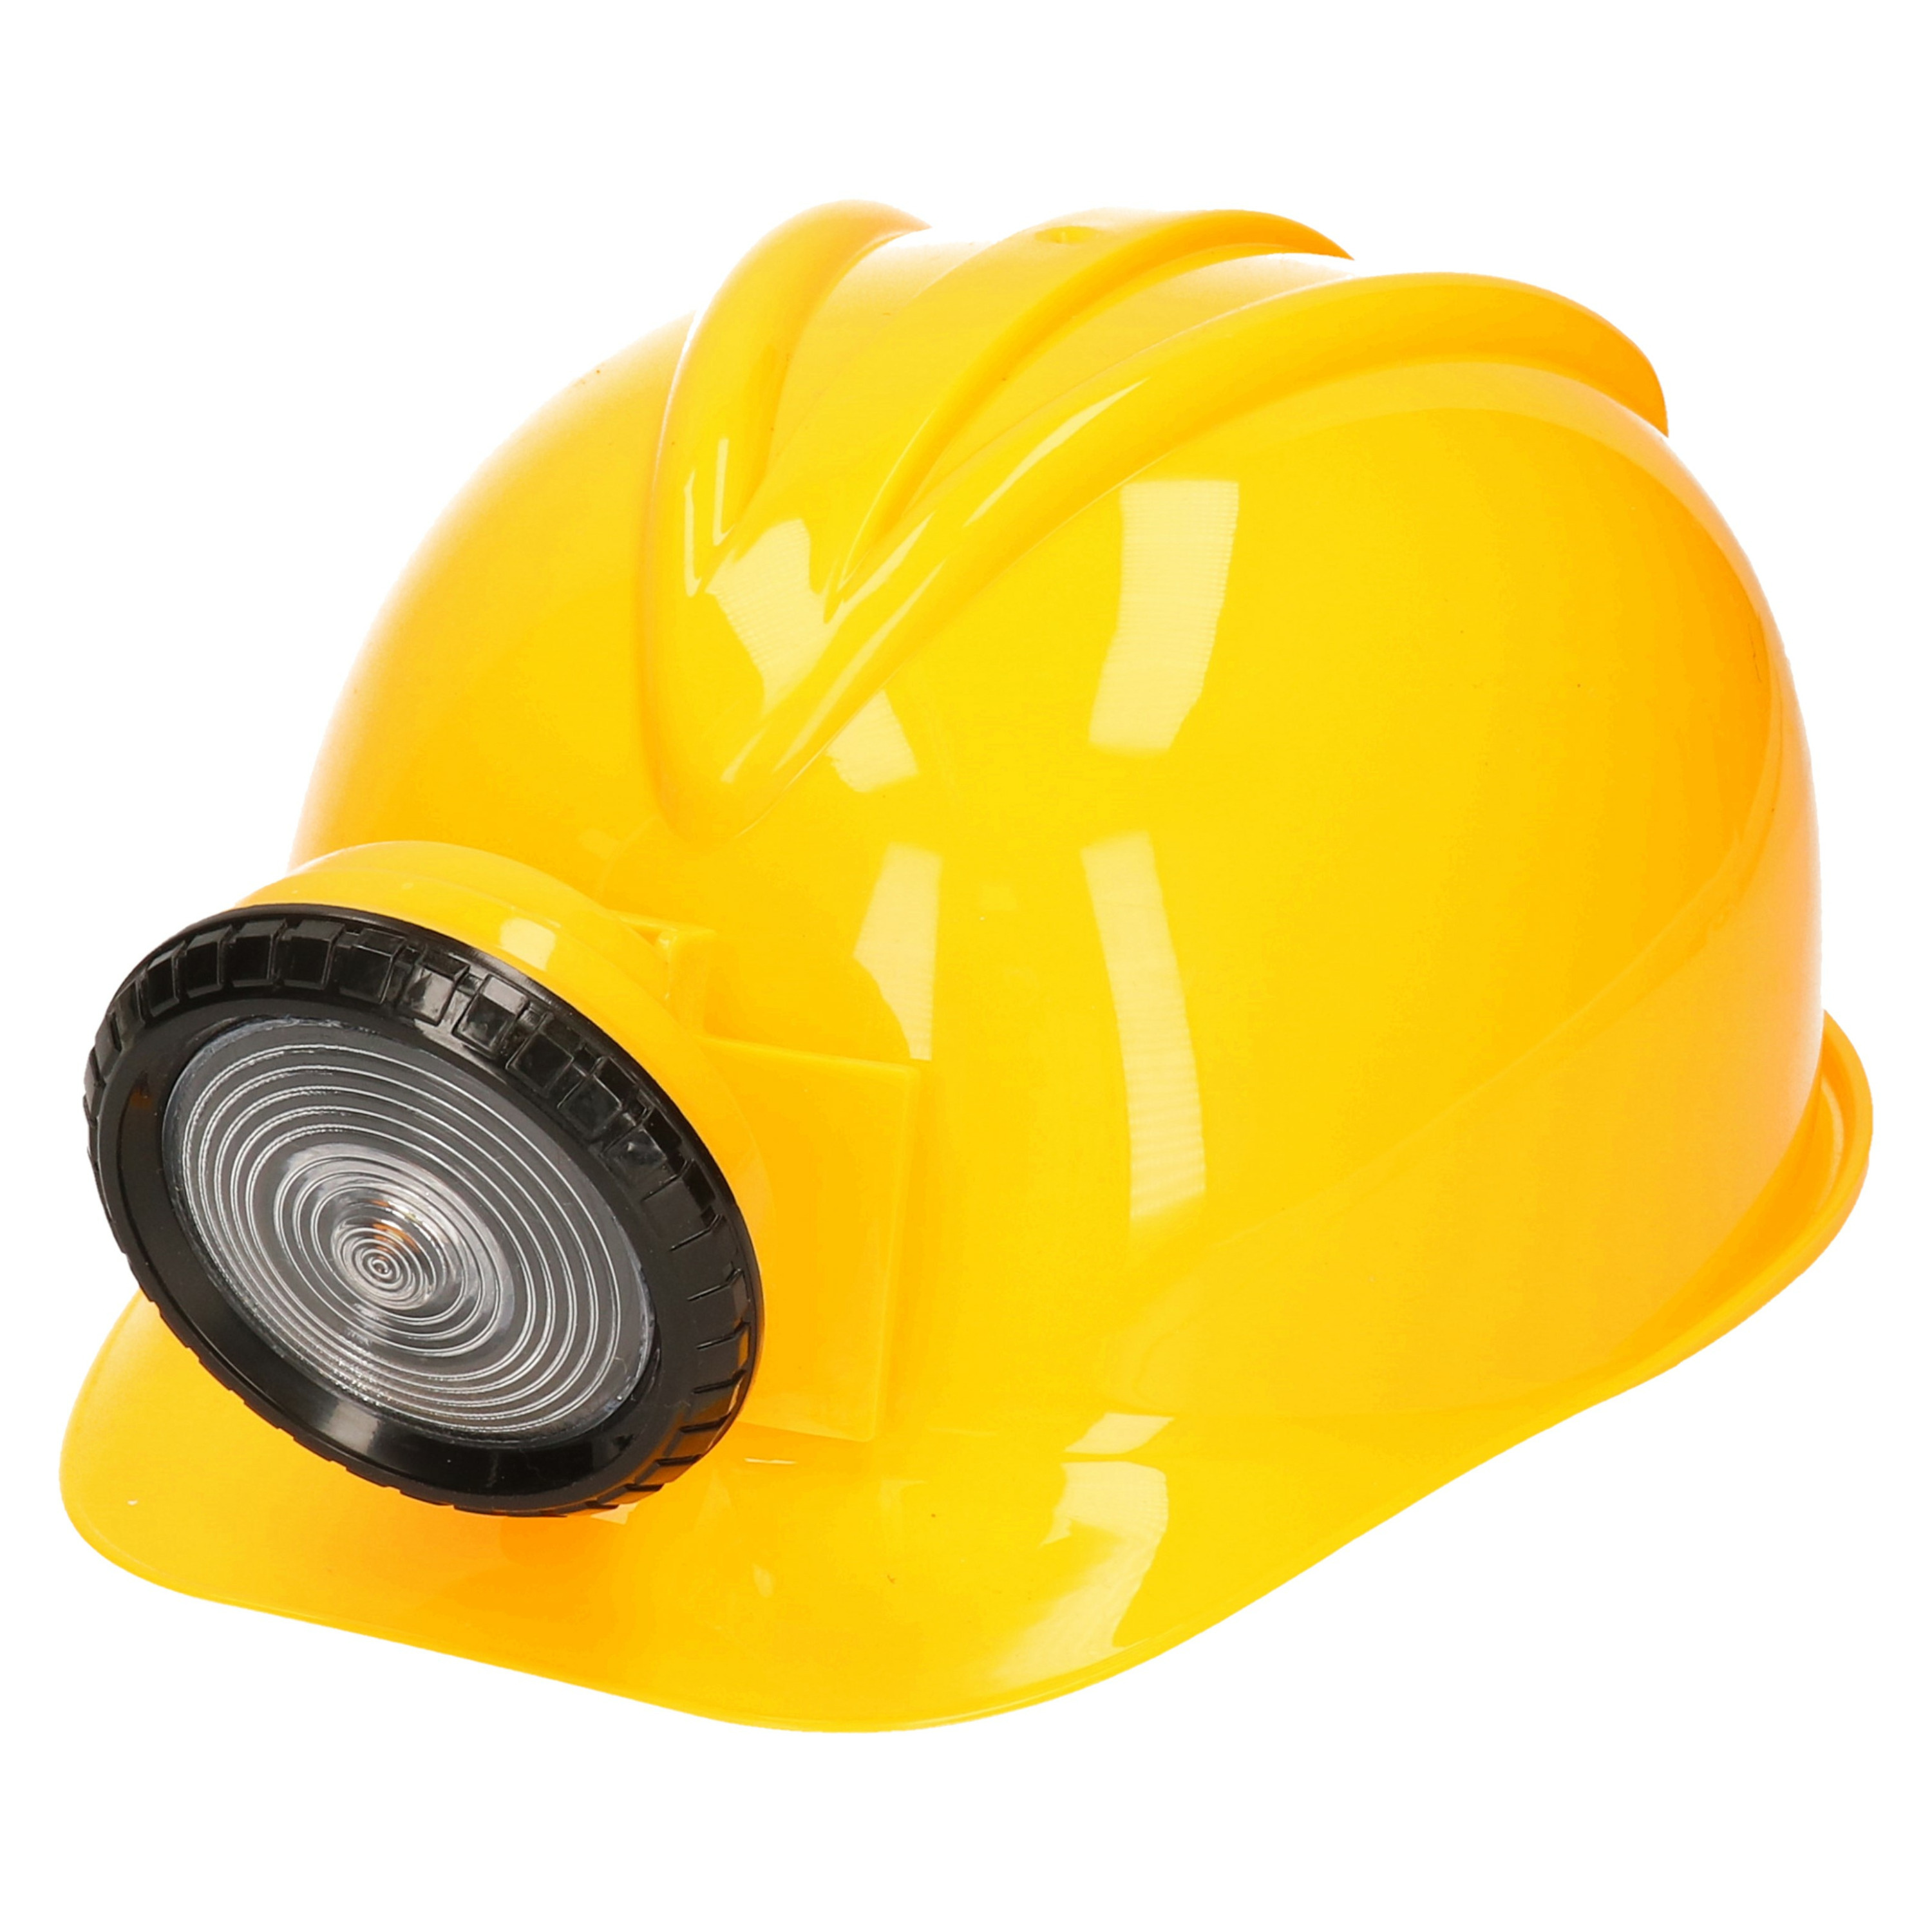 Carnaval/verkleed Bouwhelm met lamp - geel - polyester - voor volwassenen - mijnwerker/bouwvakker